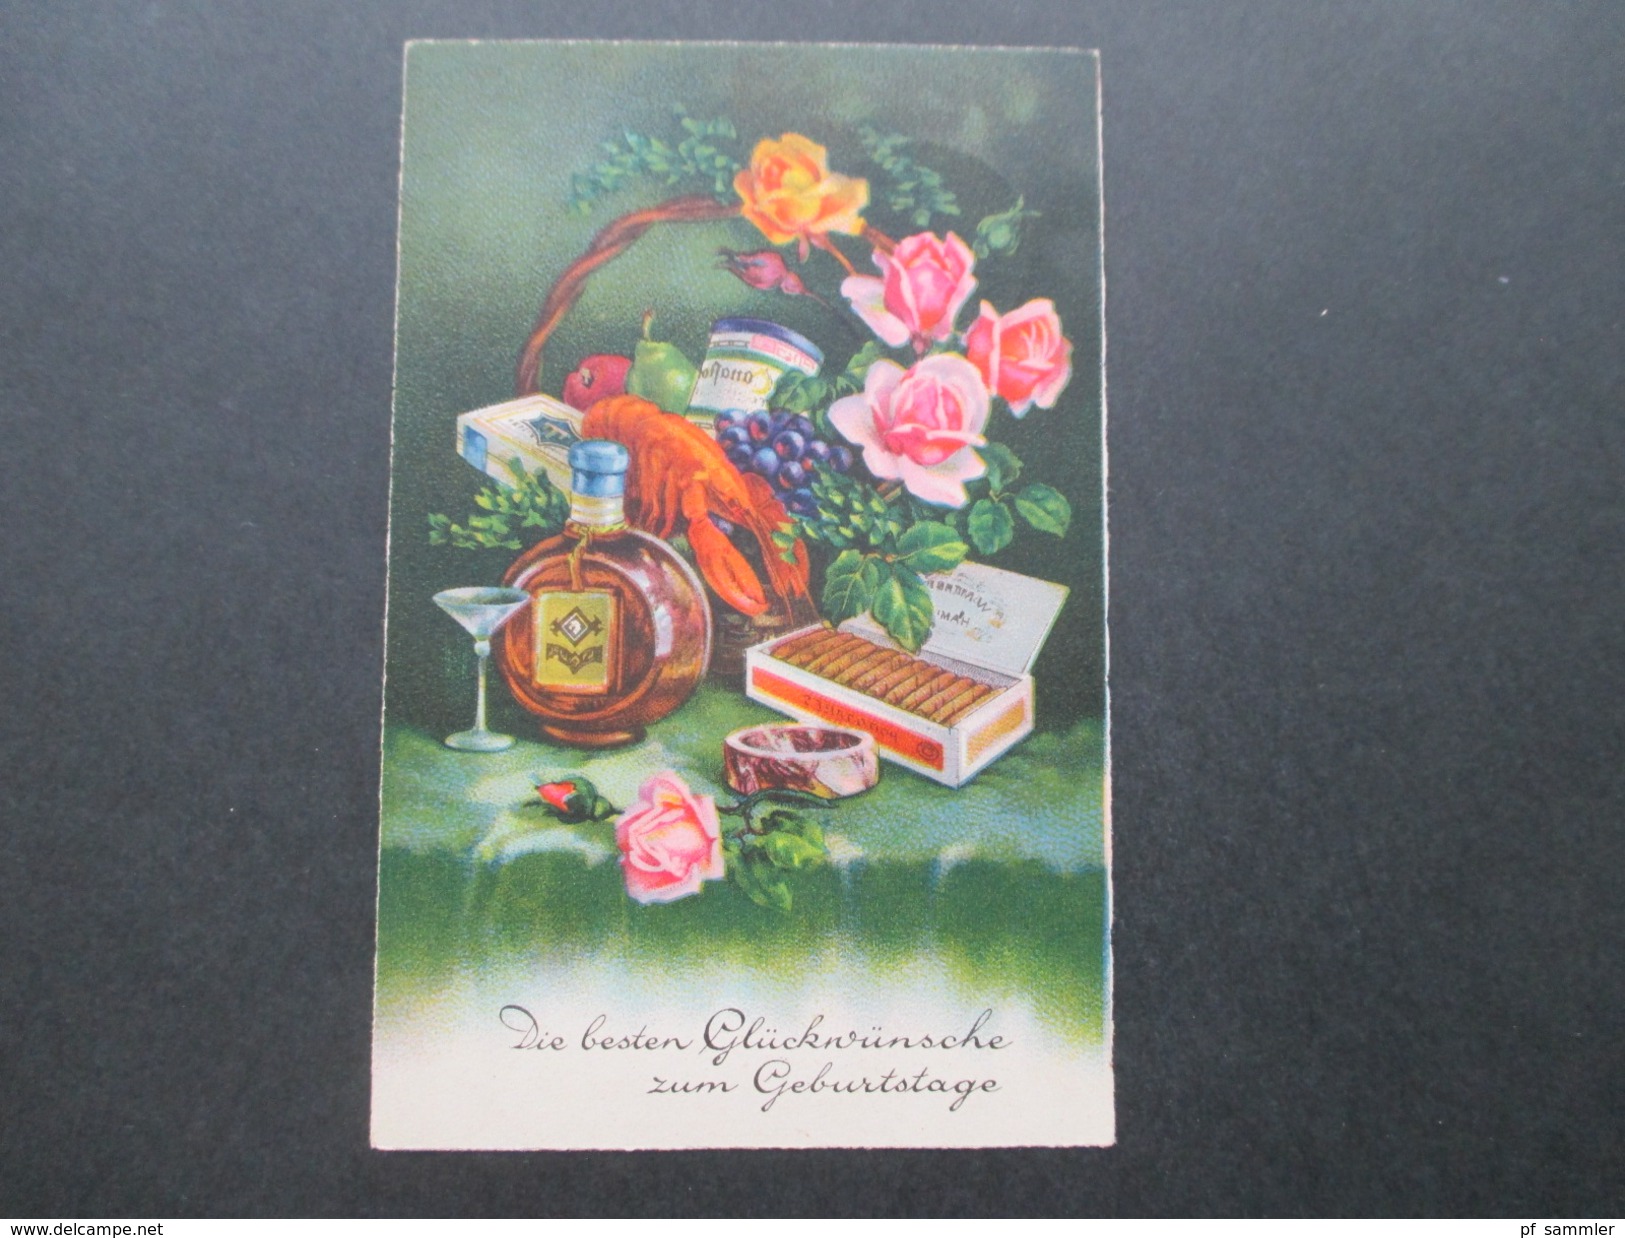 AK / Glückwunschkarte 1932 Fresskorb Mit Hummer / Cognac / Zigarren / Blumen Usw...EAS Postkarte Nr.1240 - Anniversaire